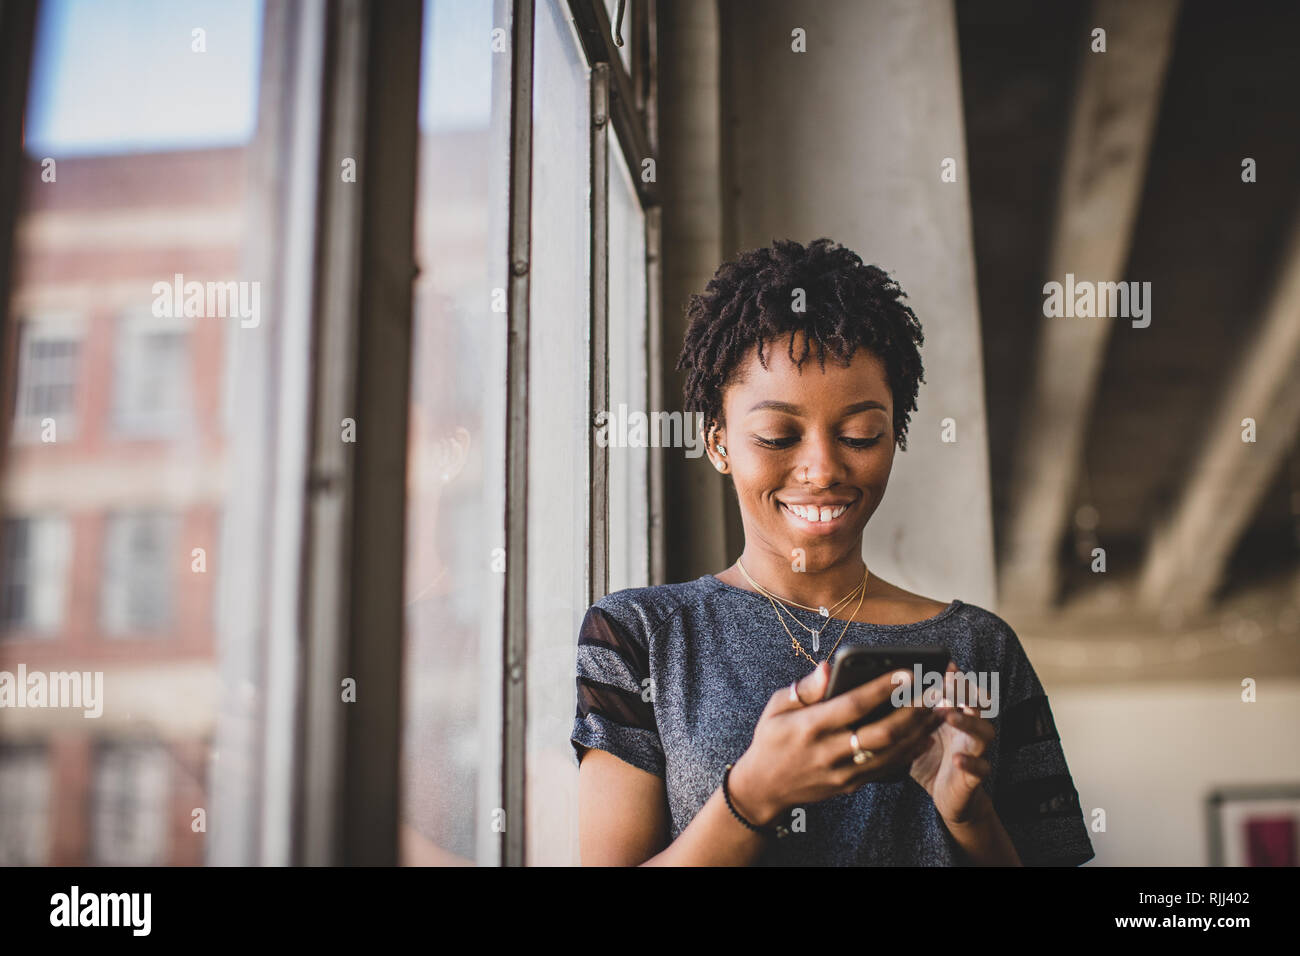 Junge afrikanische amerikanische weibliche in loft apartment Blick auf Smartphone Stockfoto